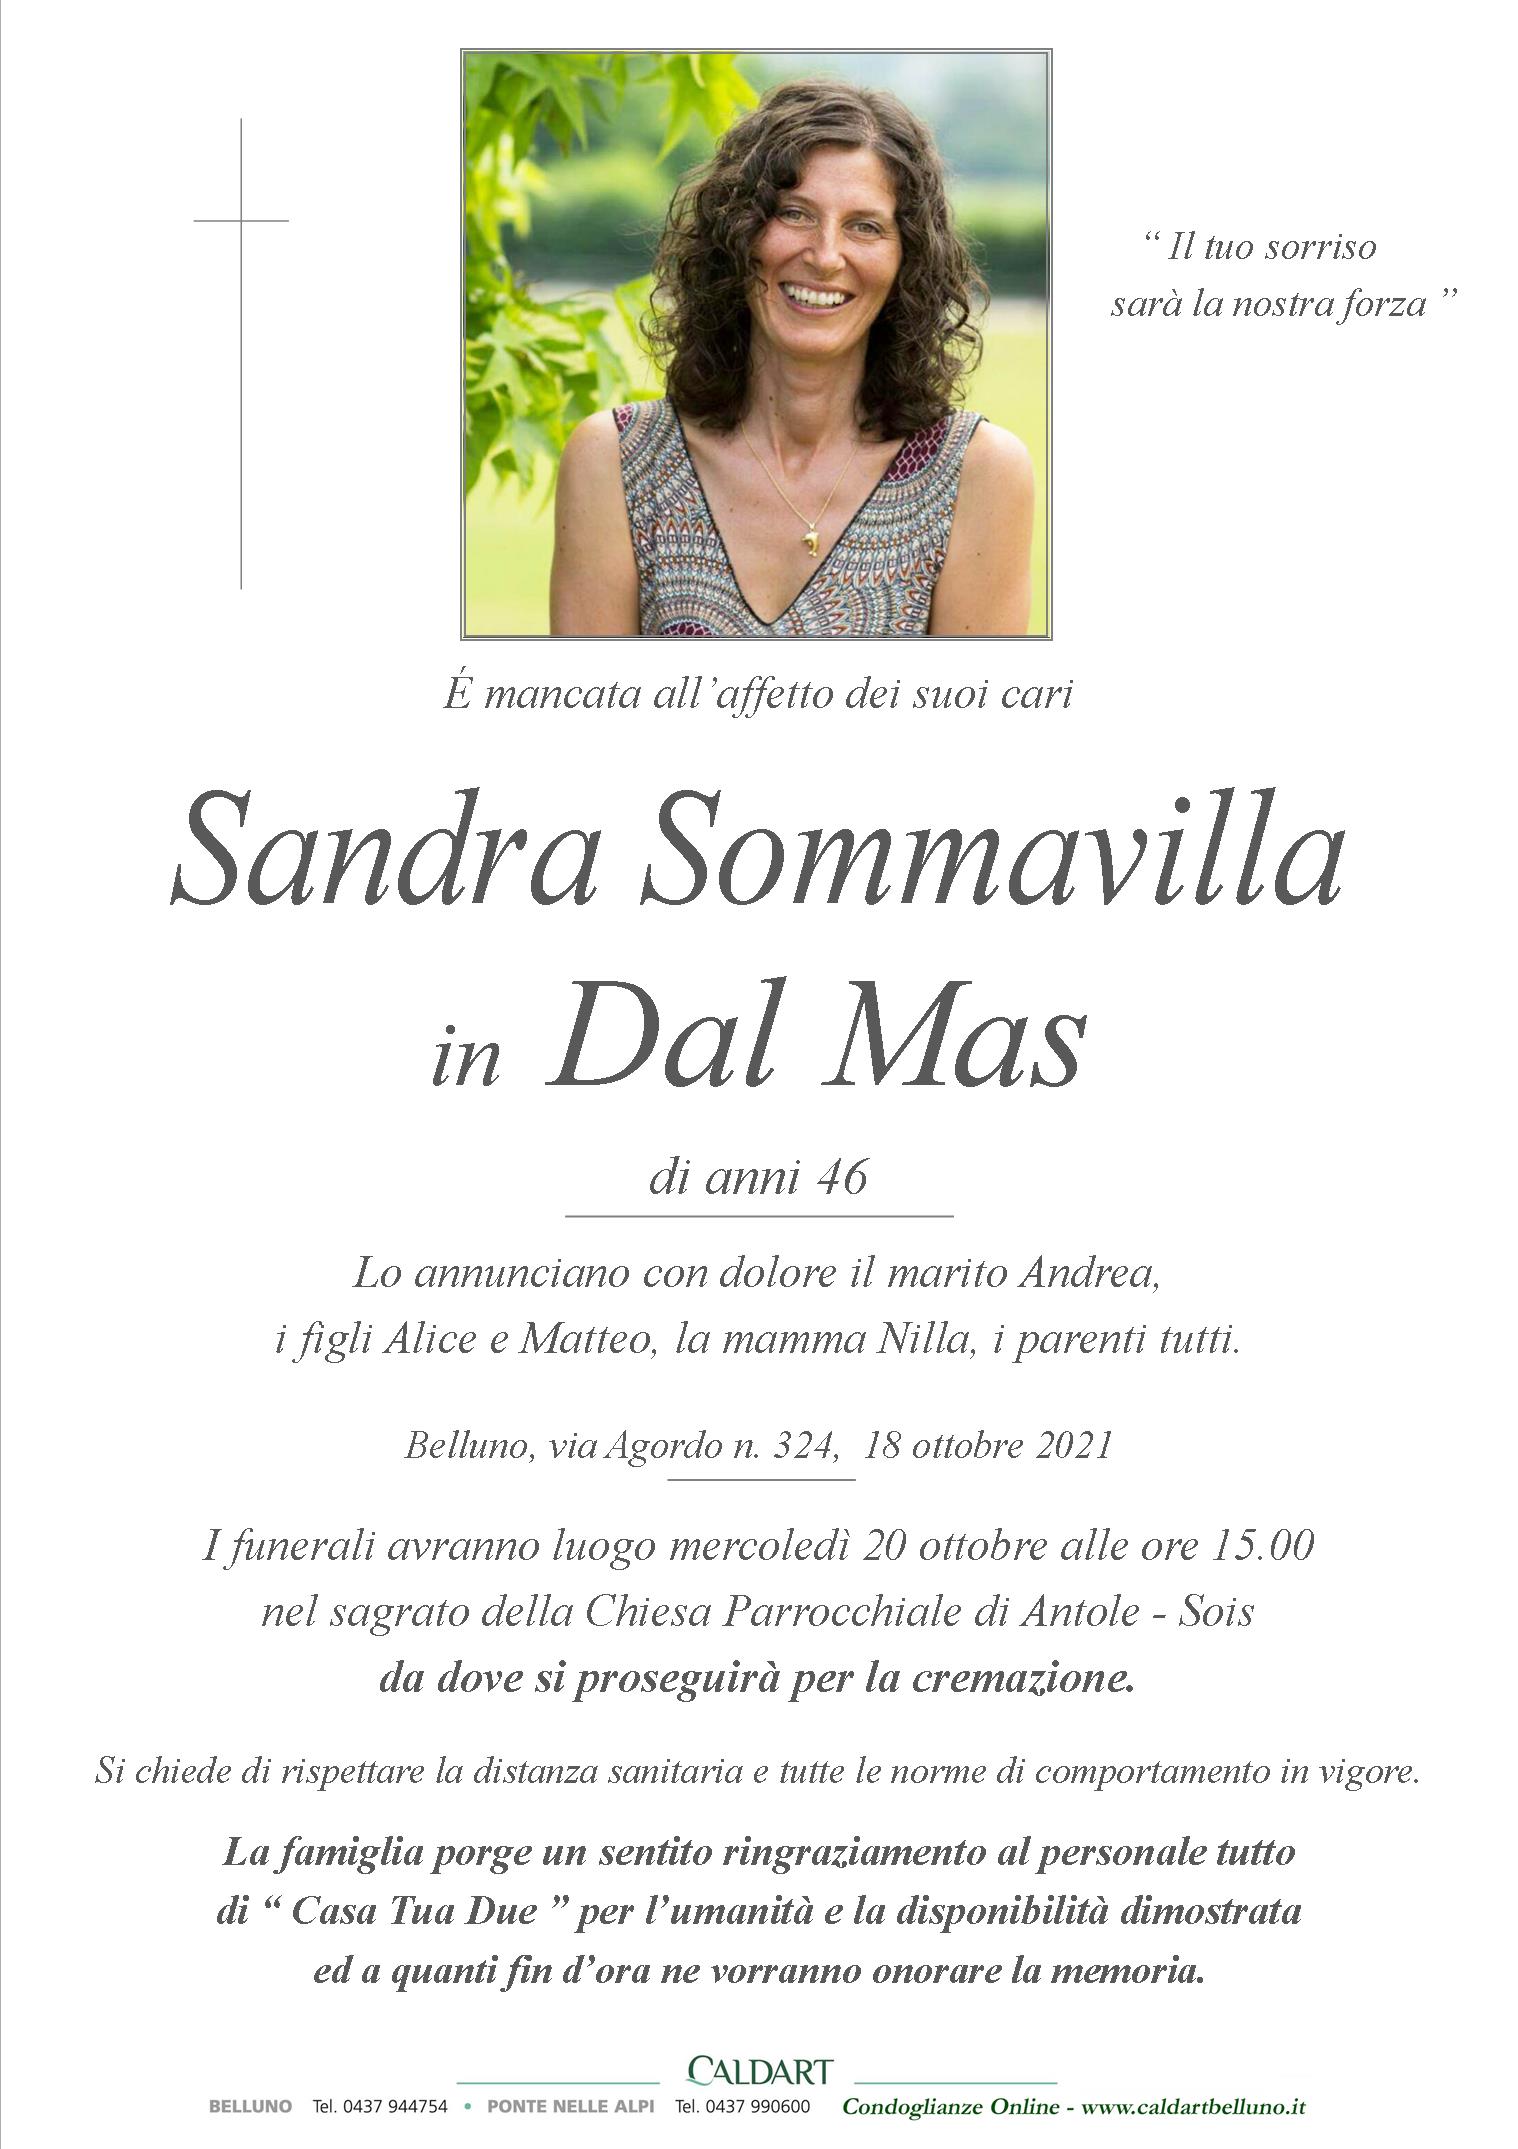 Sommavilla Sandra